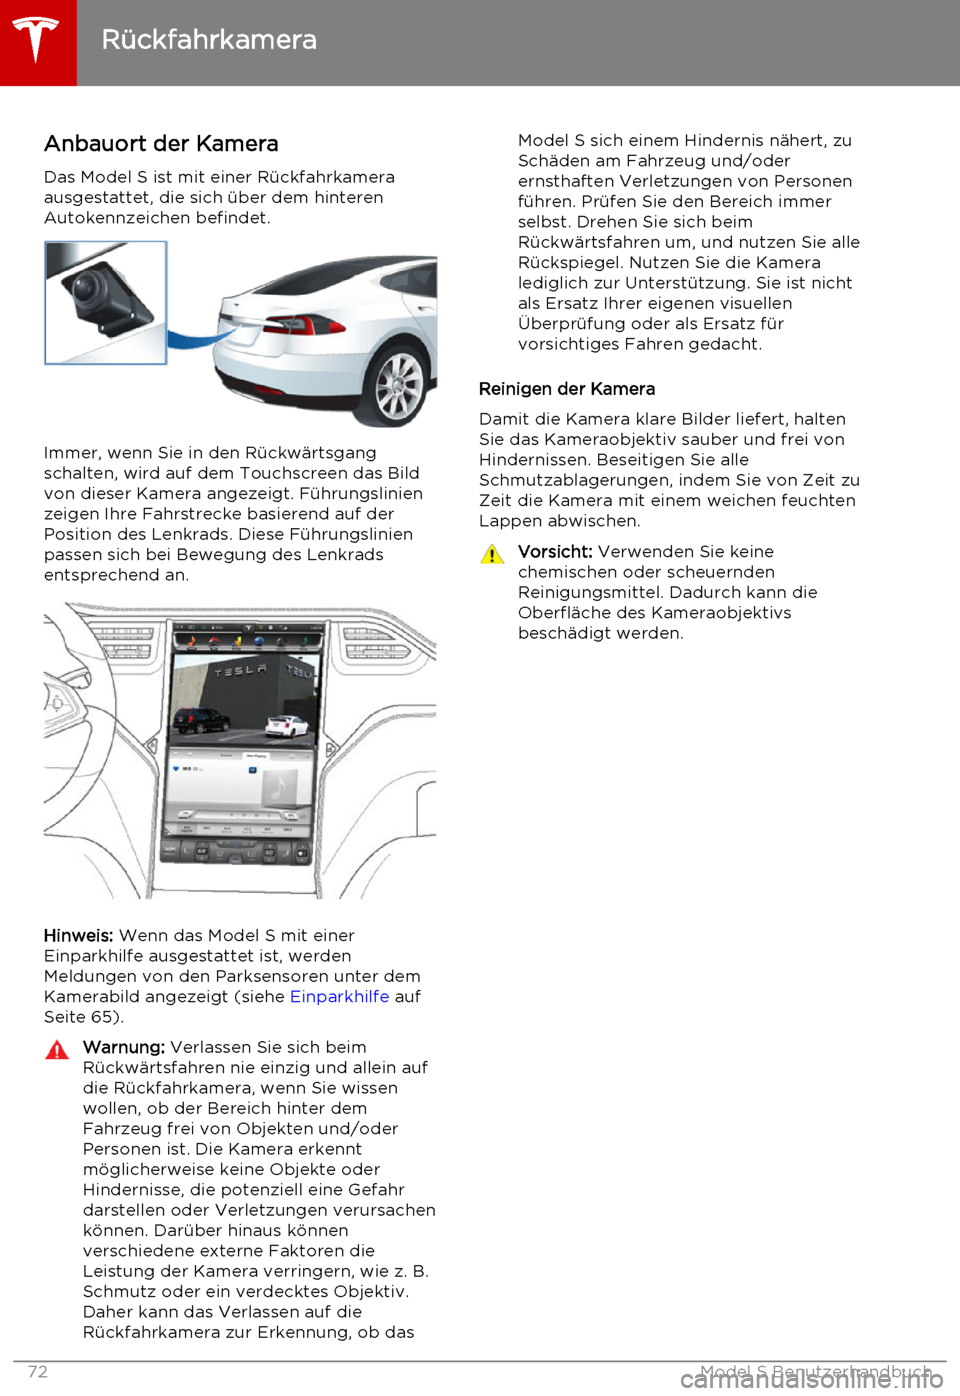 TESLA MODEL S 2015  Betriebsanleitung (in German) Anbauort der KameraDas Model S ist mit einer Rückfahrkamera
ausgestattet, die sich über dem hinteren Autokennzeichen befindet.
Immer, wenn Sie in den Rückwärtsgang
schalten, wird auf dem Touchscre